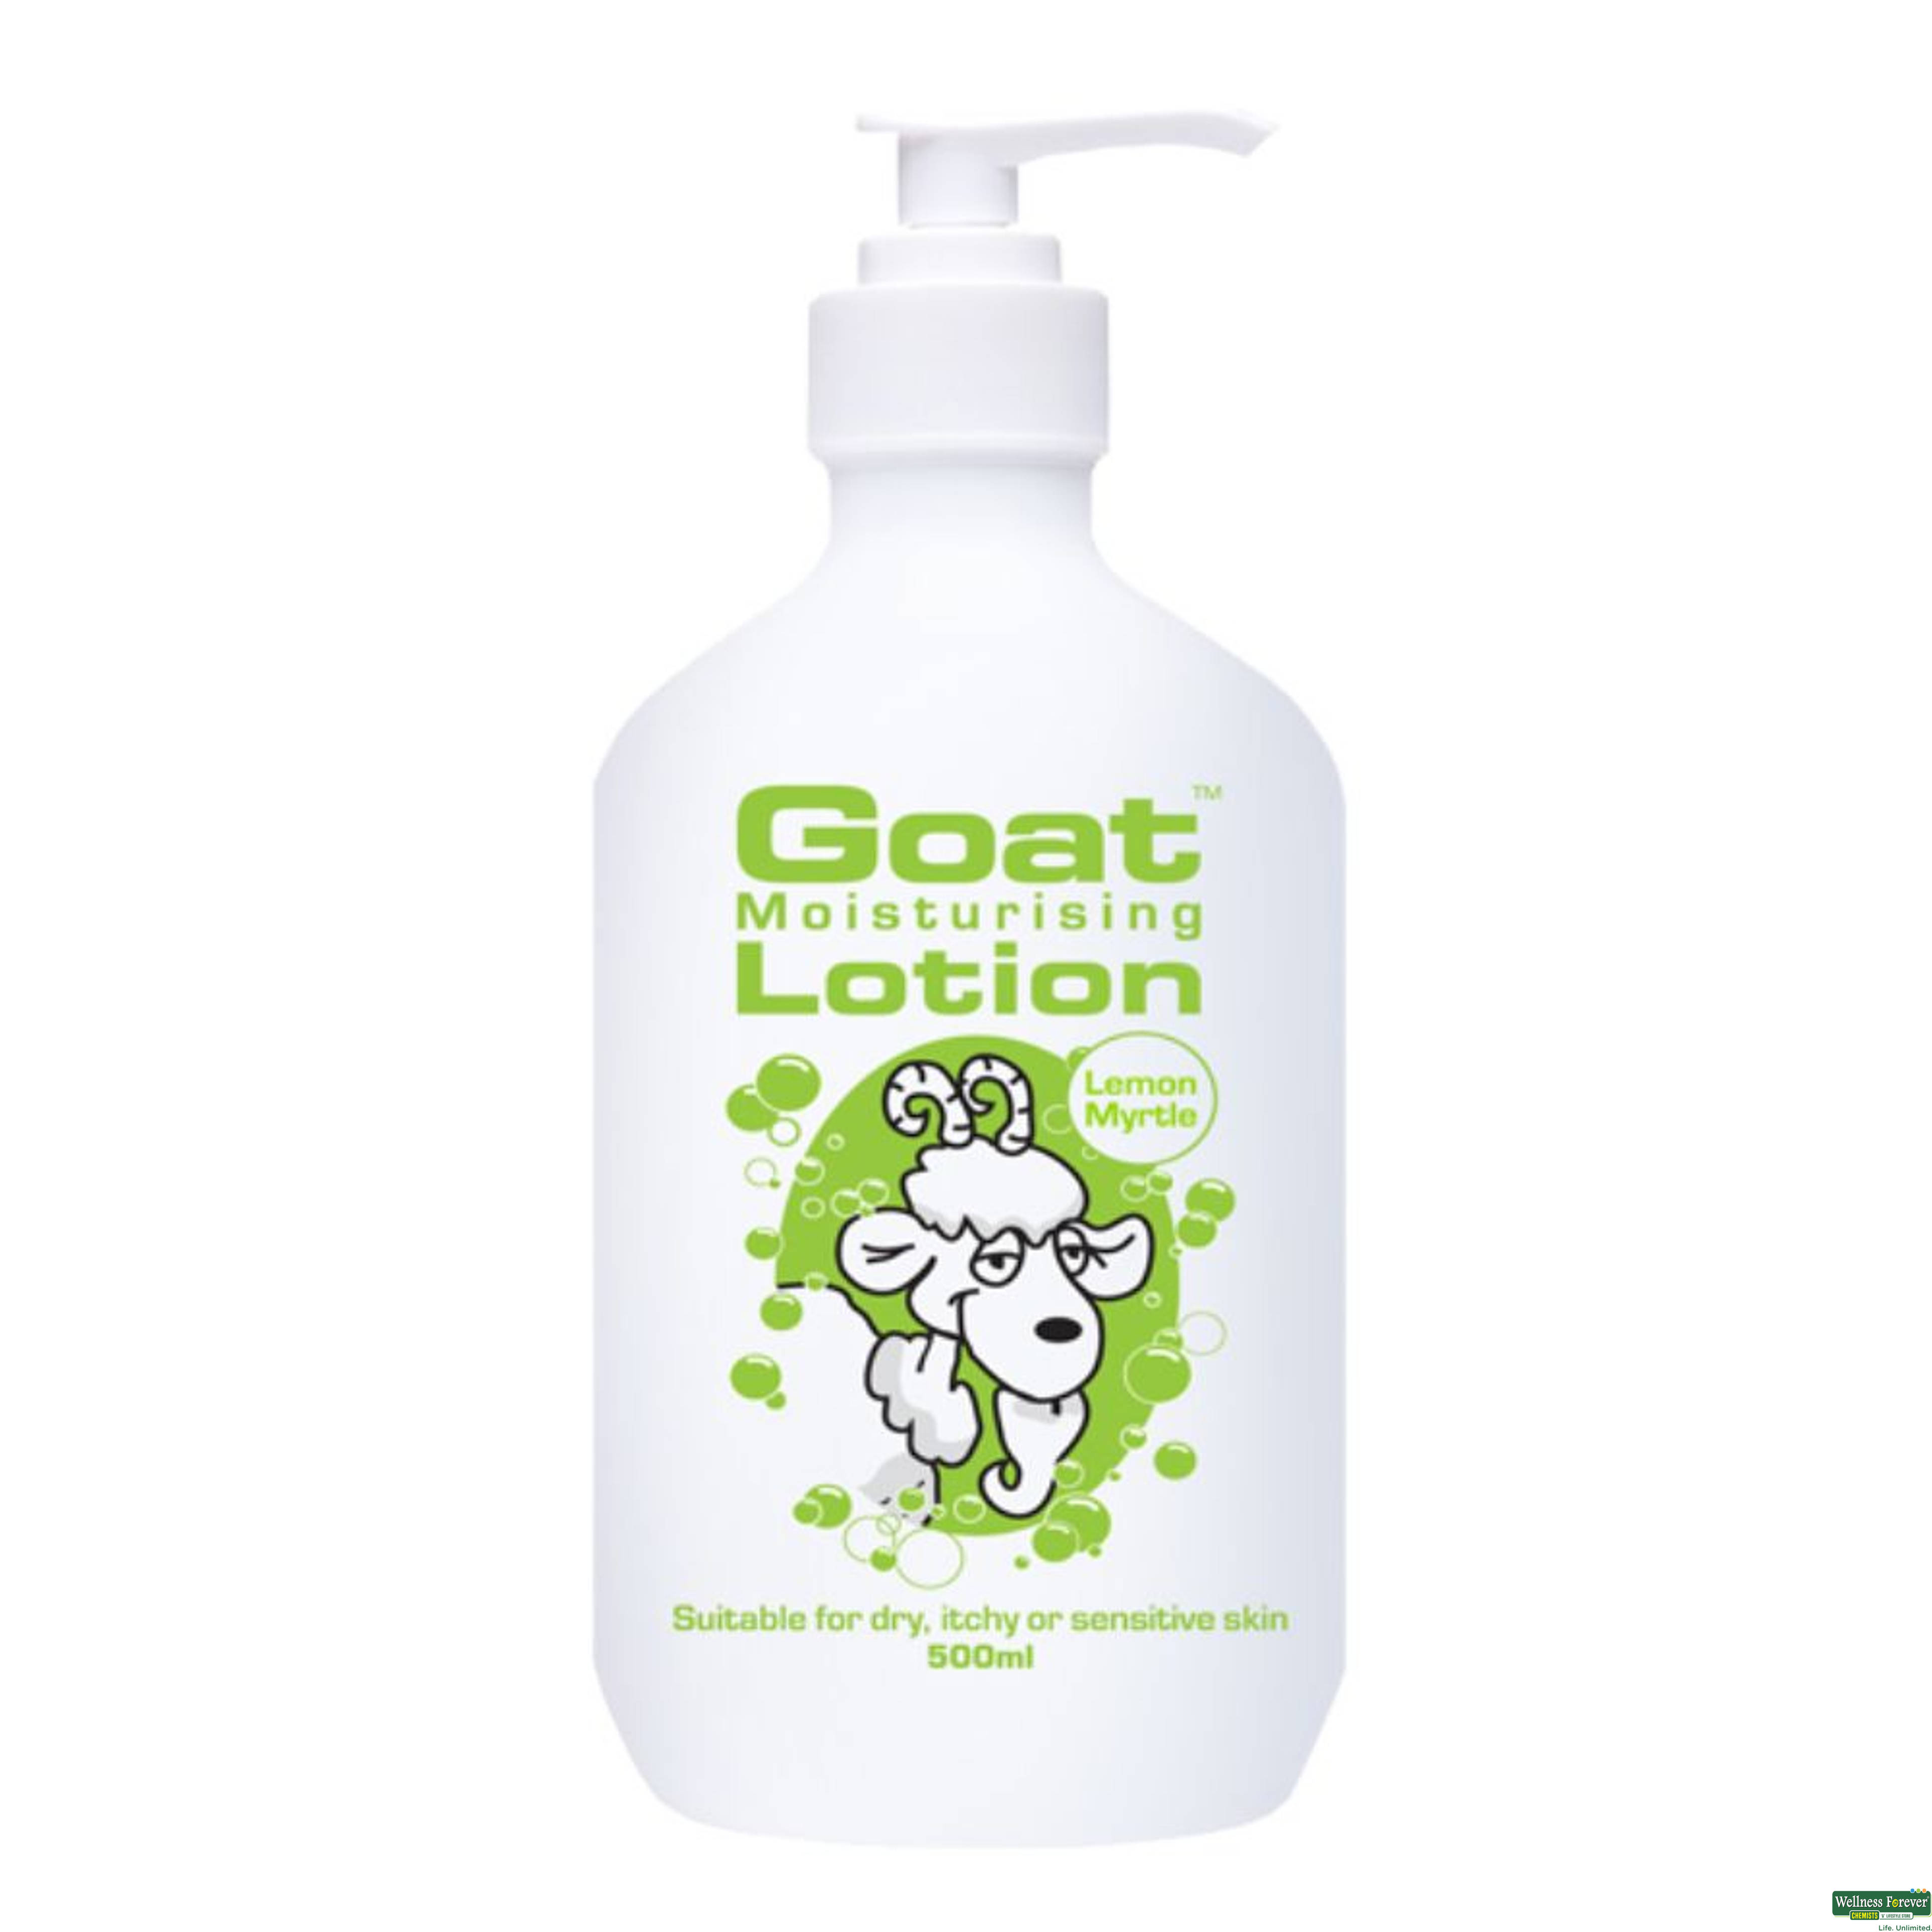 Goat Moisturising Lotion With Lemon Myrtle, 500 ml-image